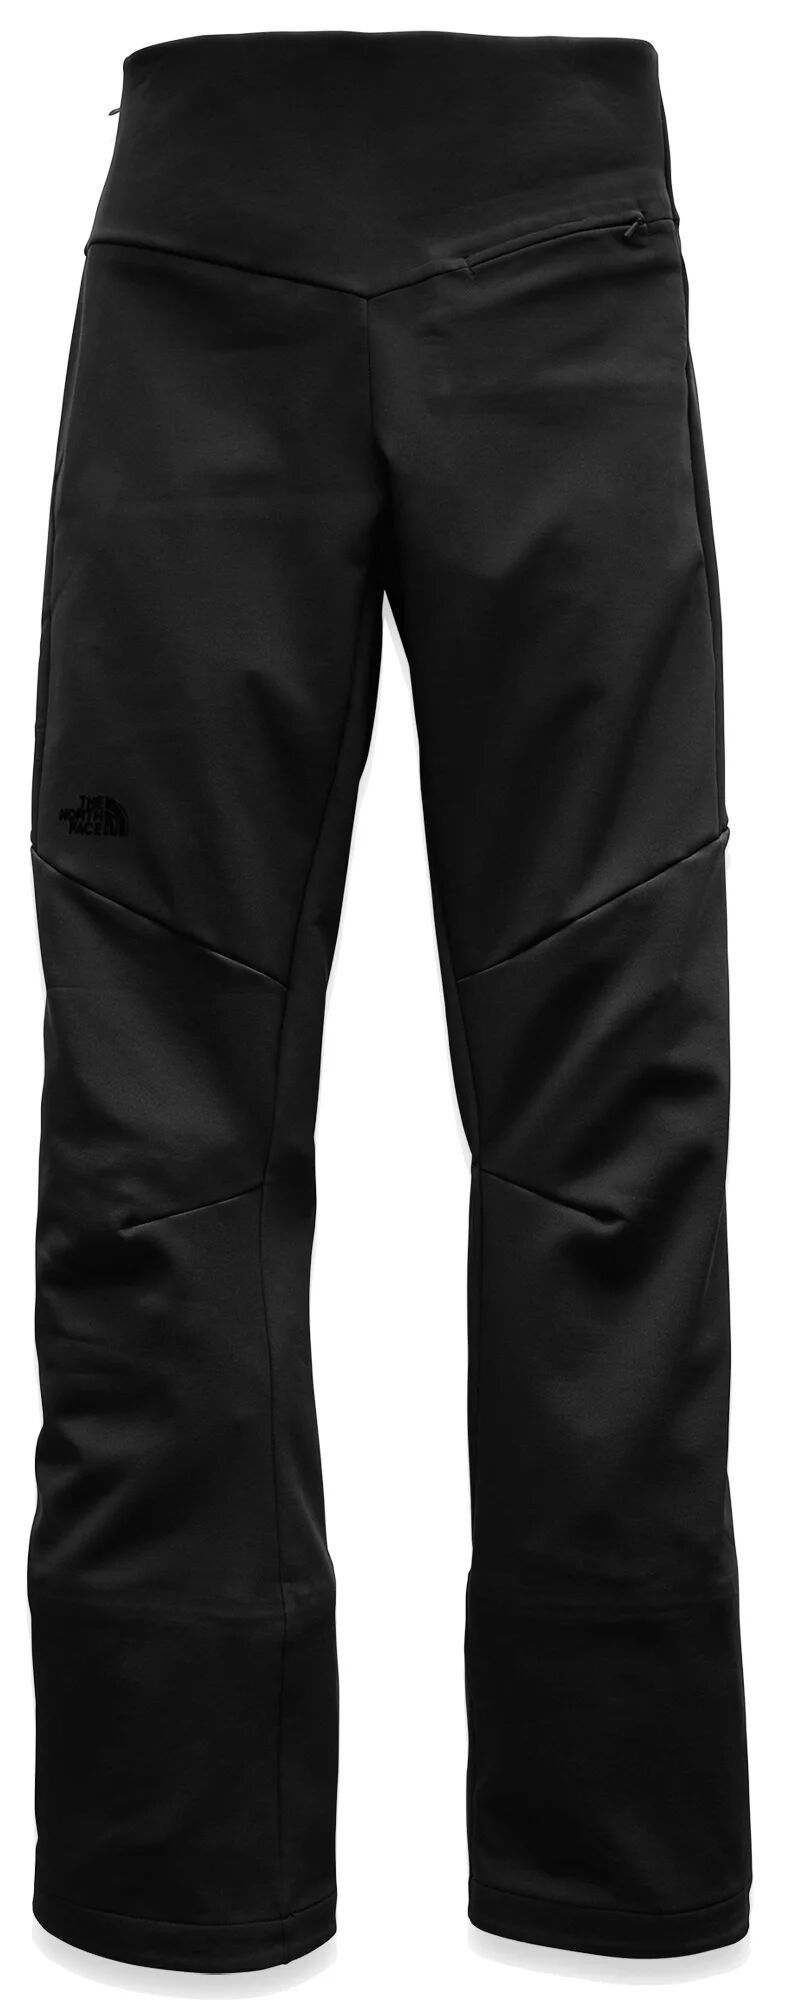 Photos - Ski Wear The North Face Women's Snoga Pants, Size 4, Black 20tnowwsngpntxxxxwou 